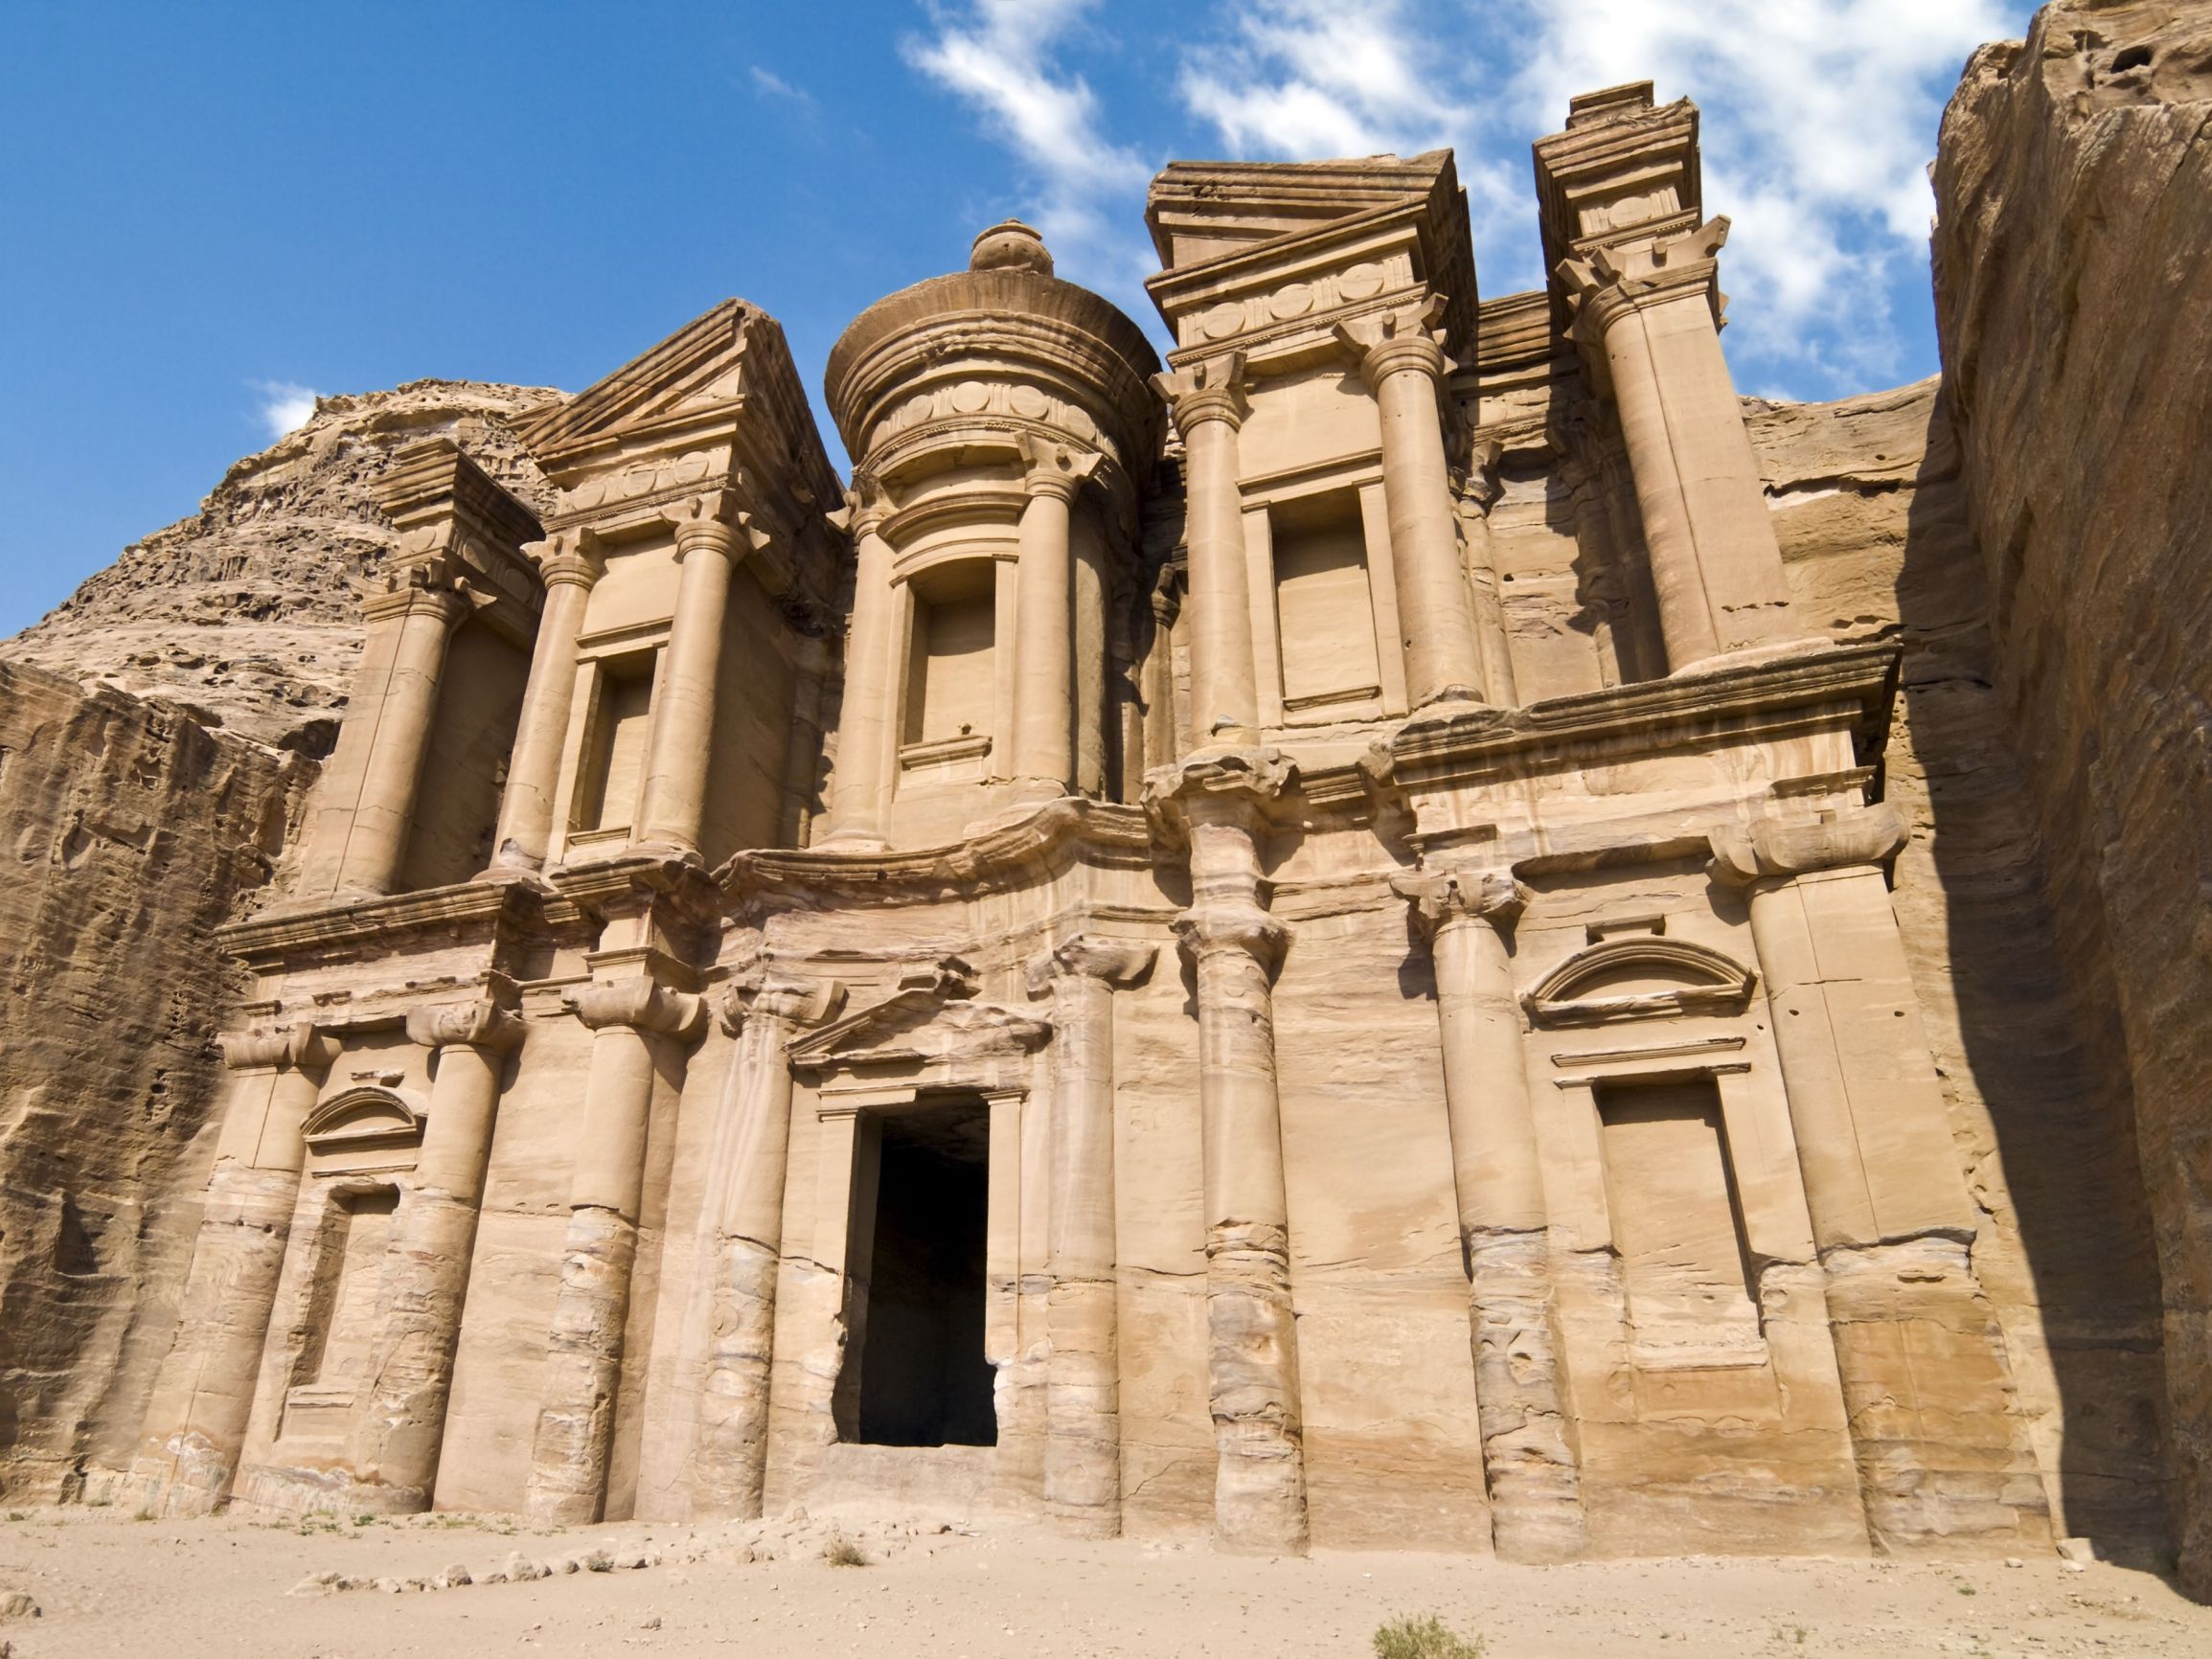 Monastary in Petra, Jordan